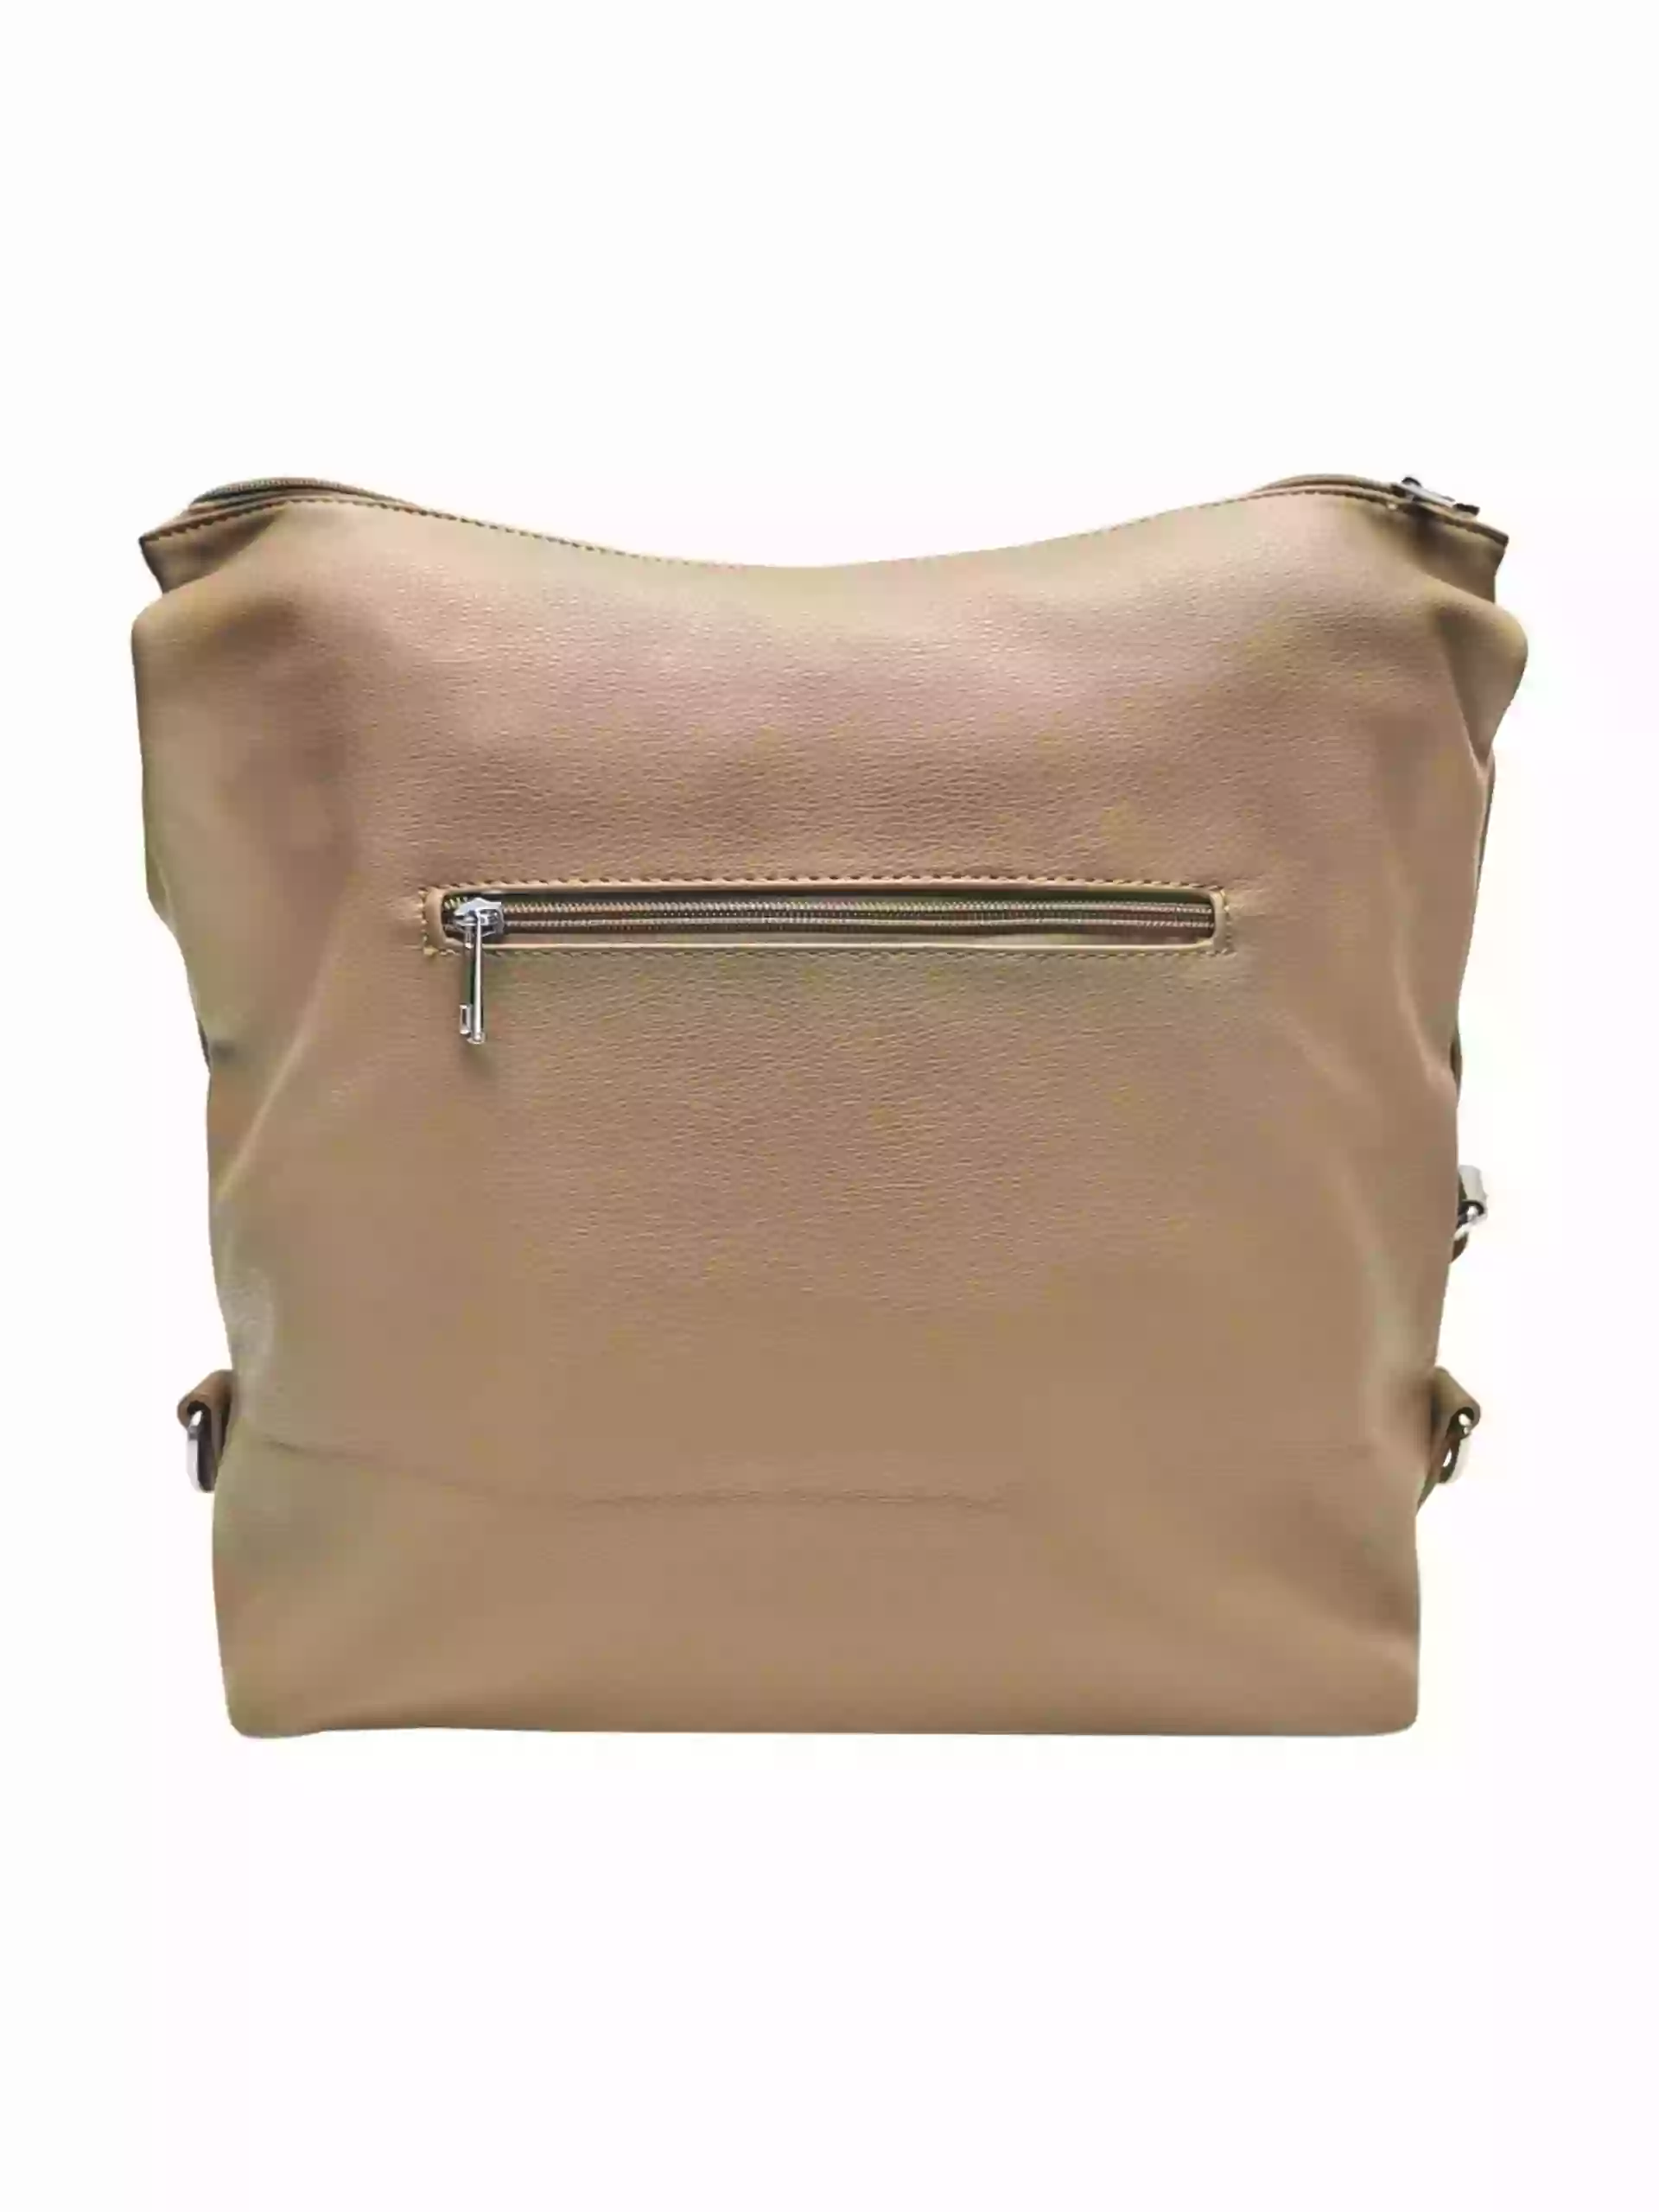 Velká hnědošedá kabelka a batoh 2v1, Tapple, X366, zadní strana kabelko-batohu 2v1